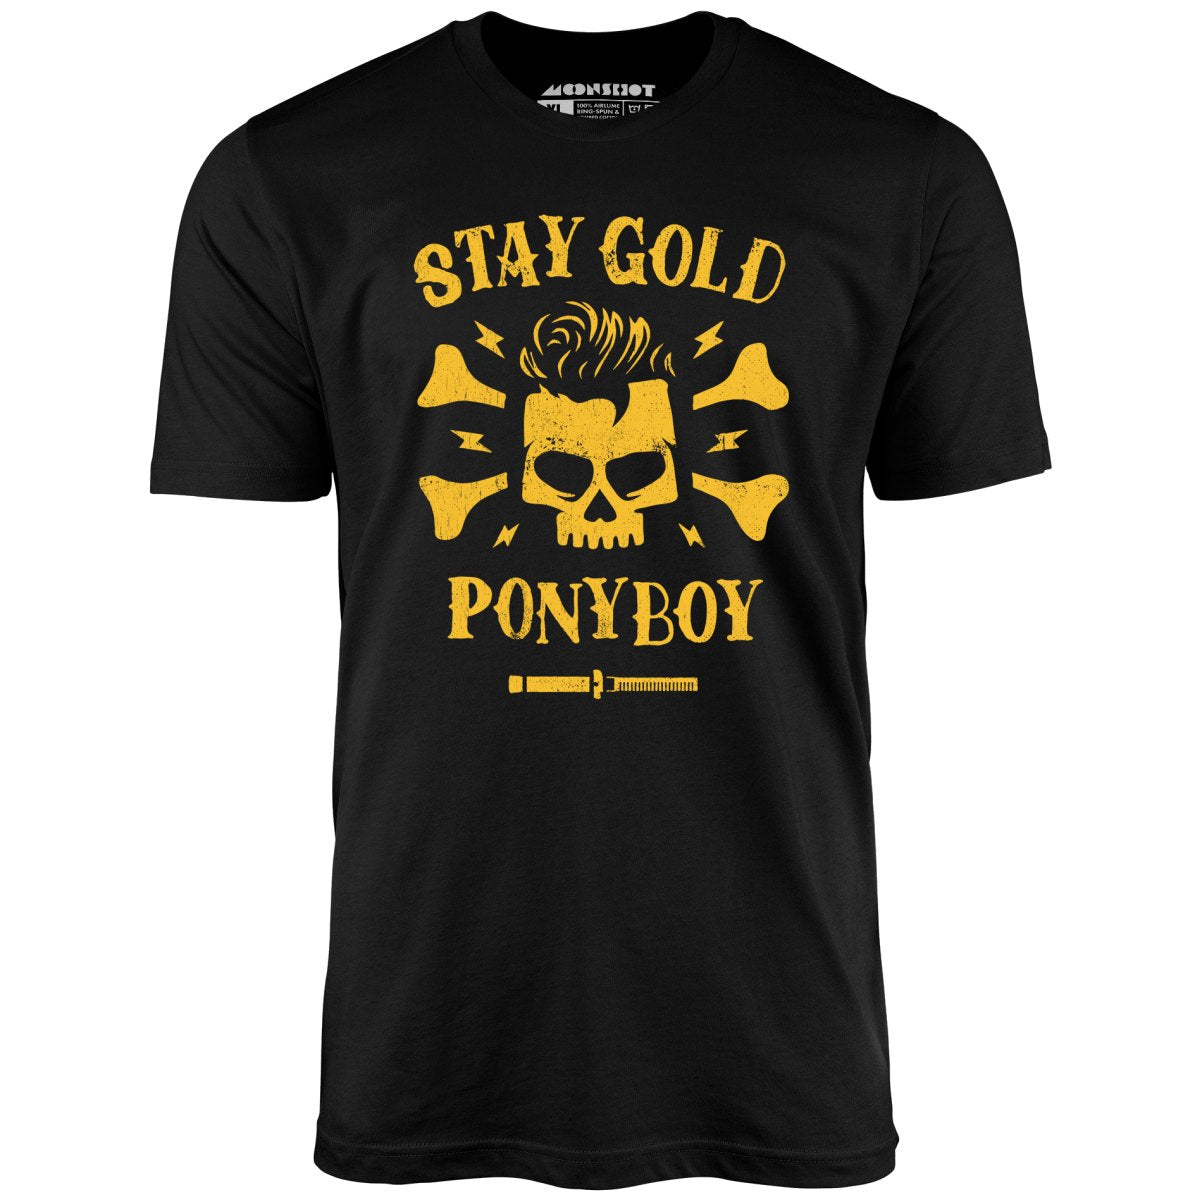 Stay Gold Ponyboy - Unisex T-Shirt